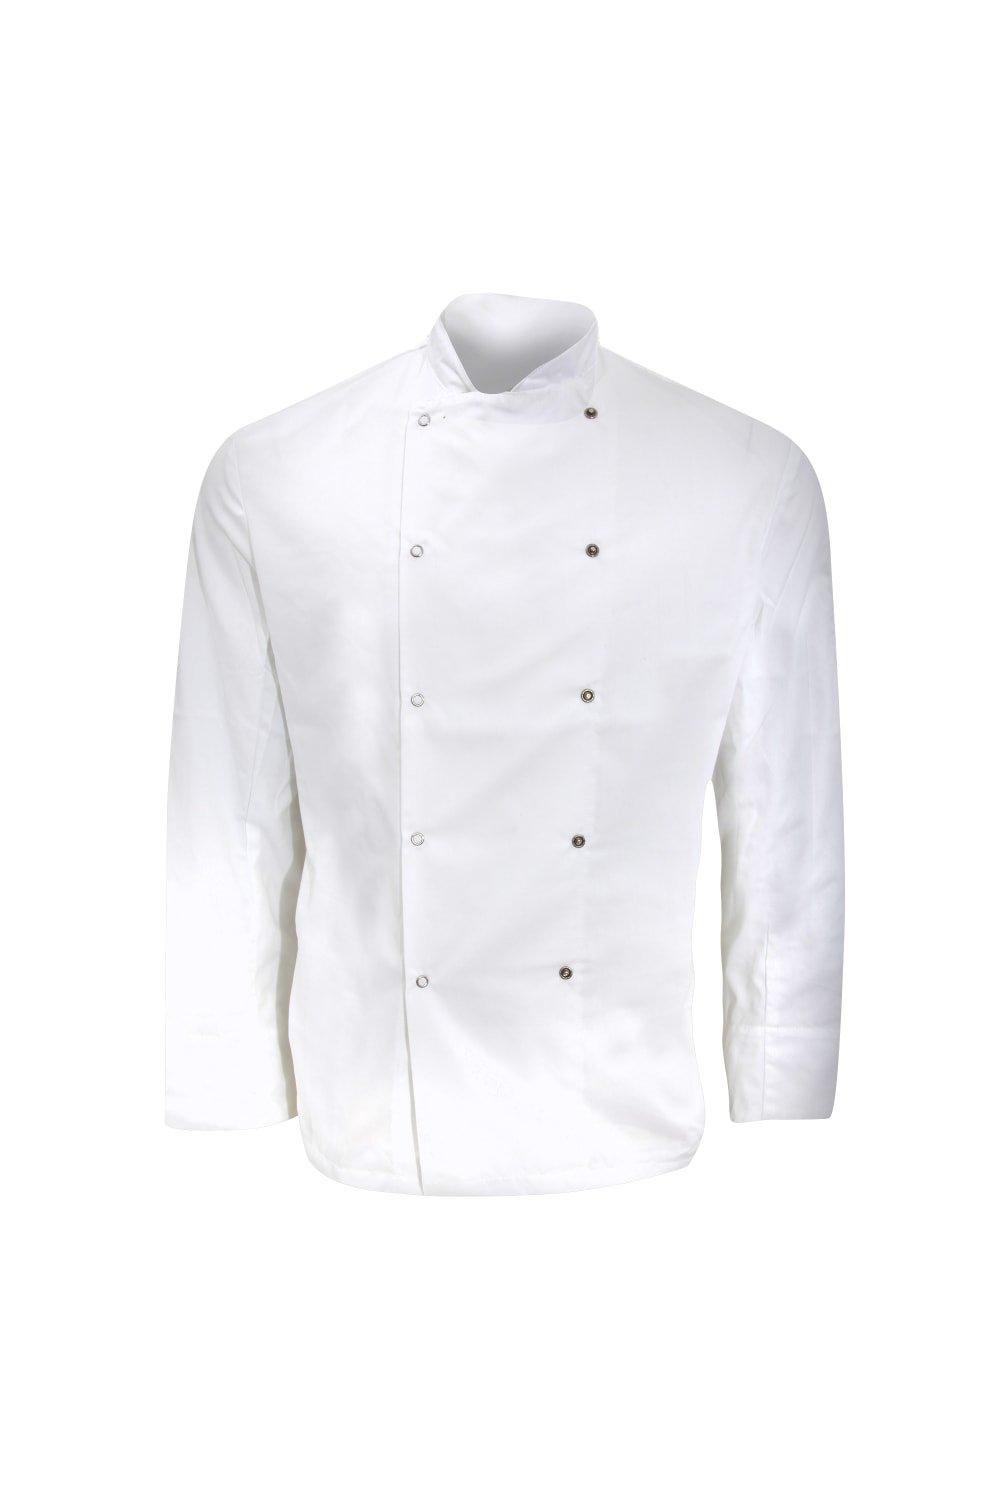 Long Sleeve Chefs Jacket Chefswear